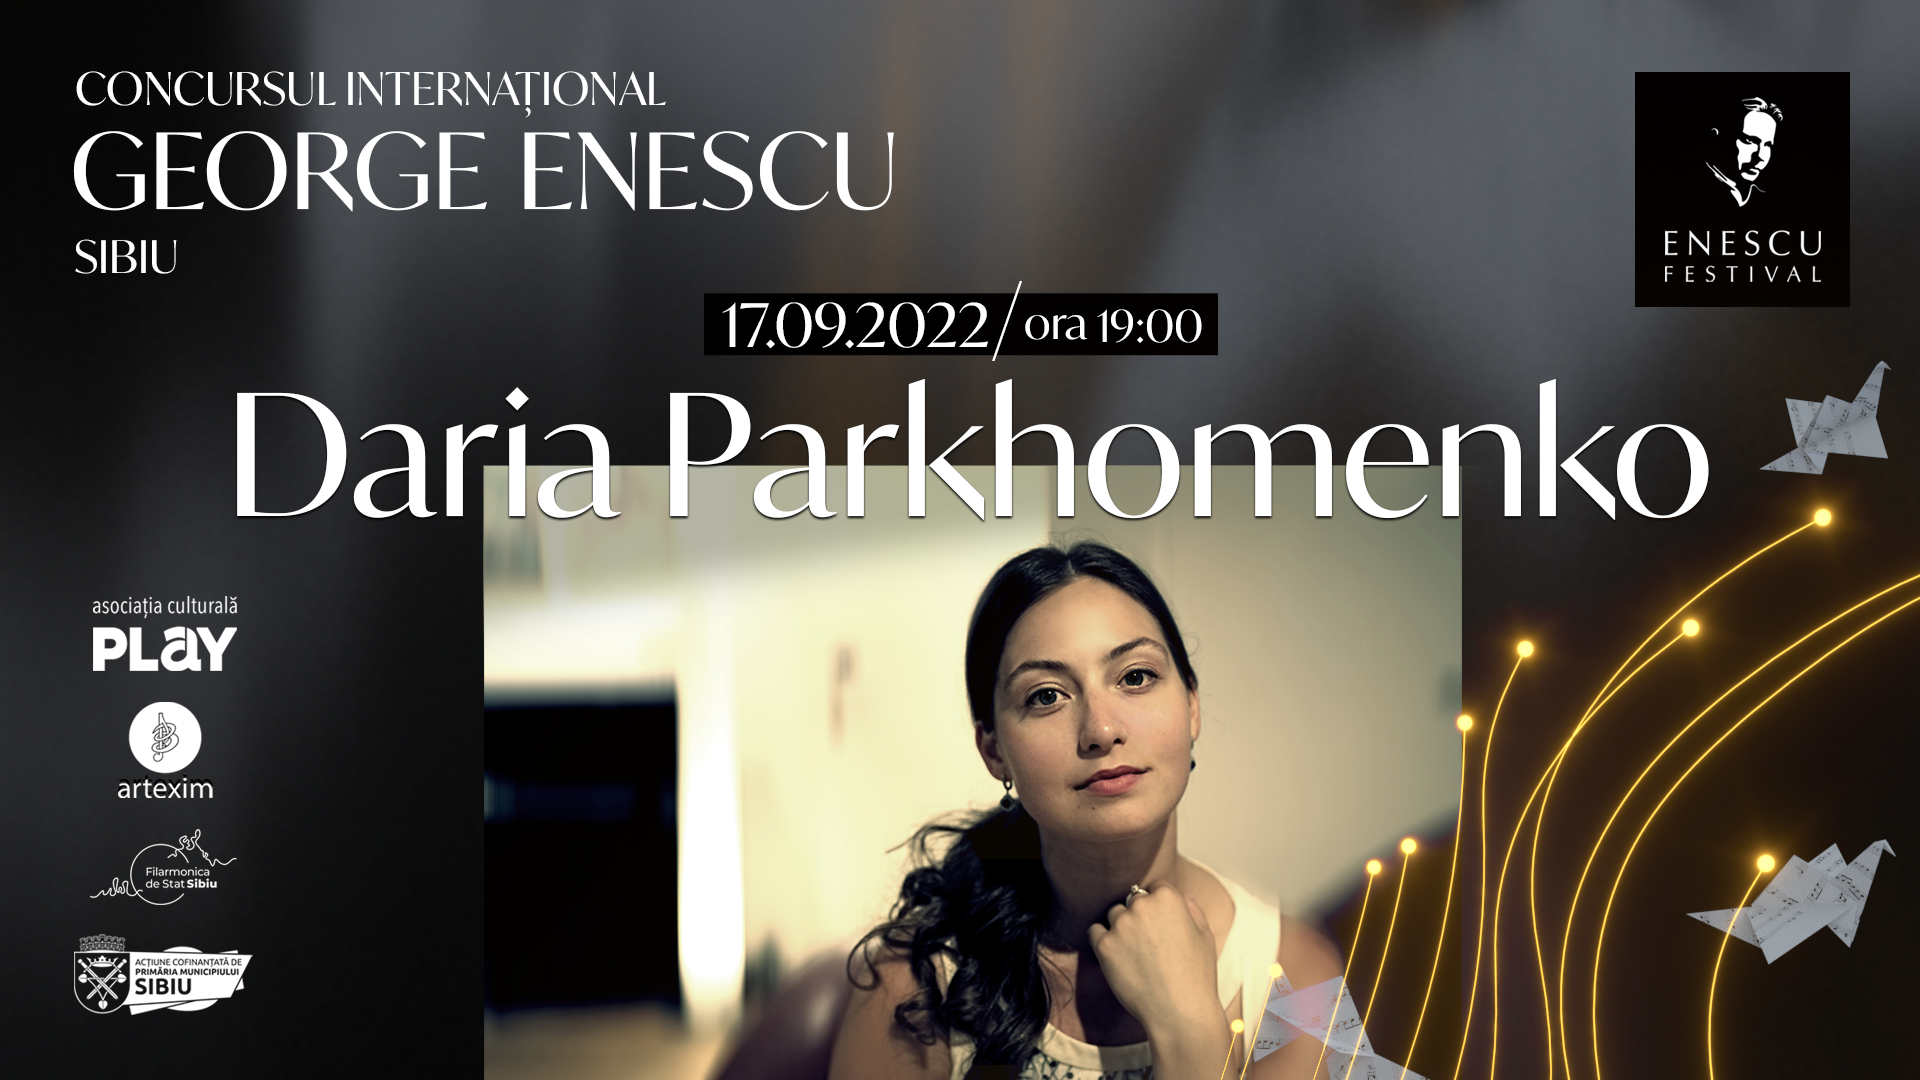 Recital Daria Parkhomenko ✦ Concursul Internațional George Enescu Sibiu